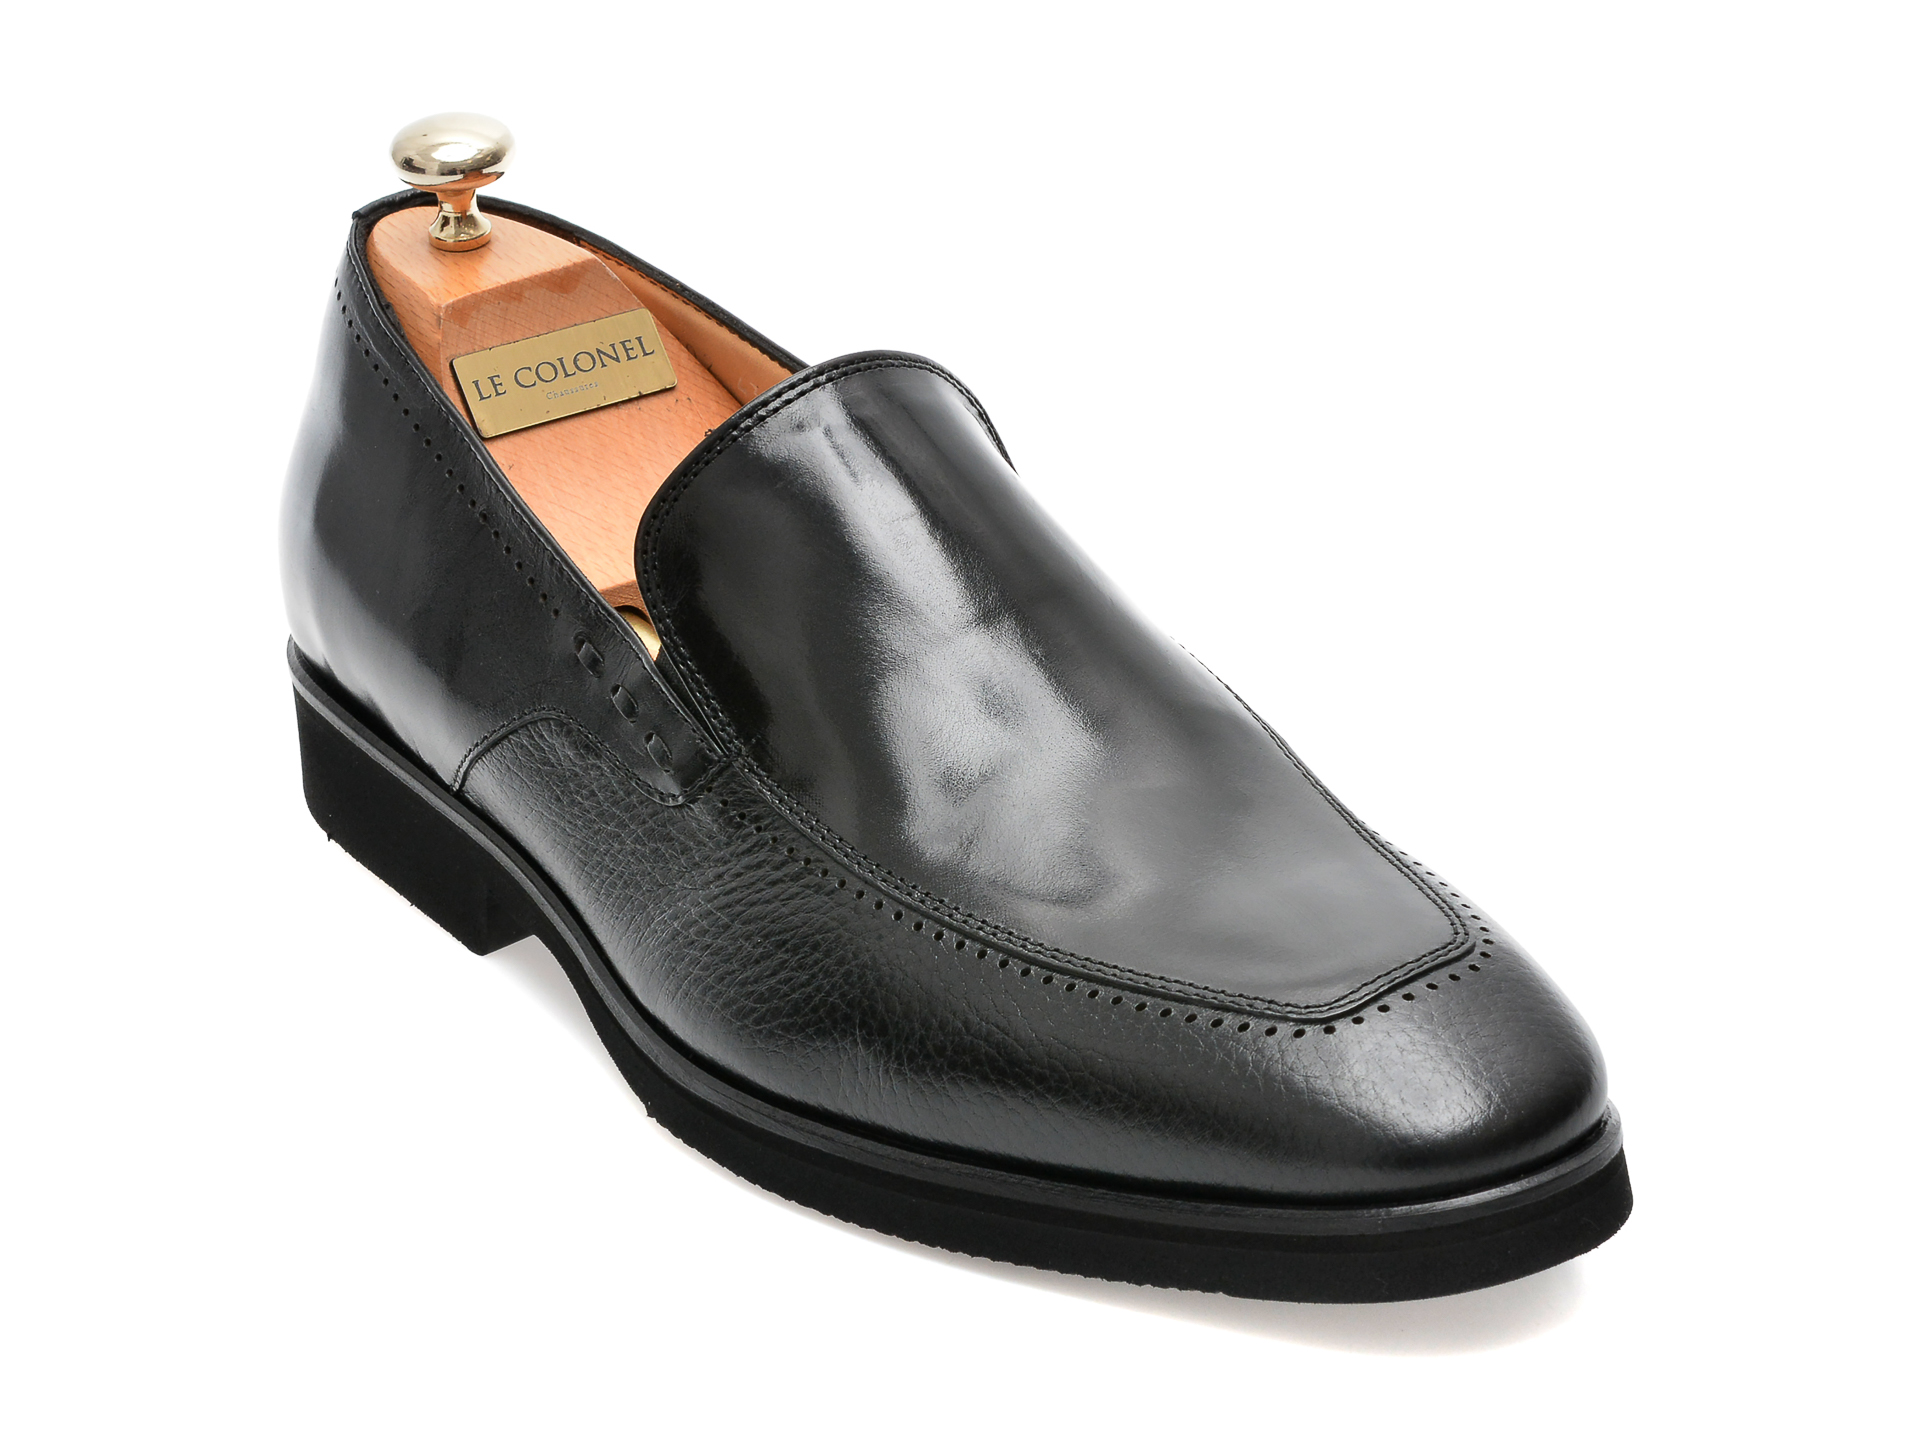 Pantofi LE COLONEL negri, 48702, din piele naturala barbati 2023-03-24